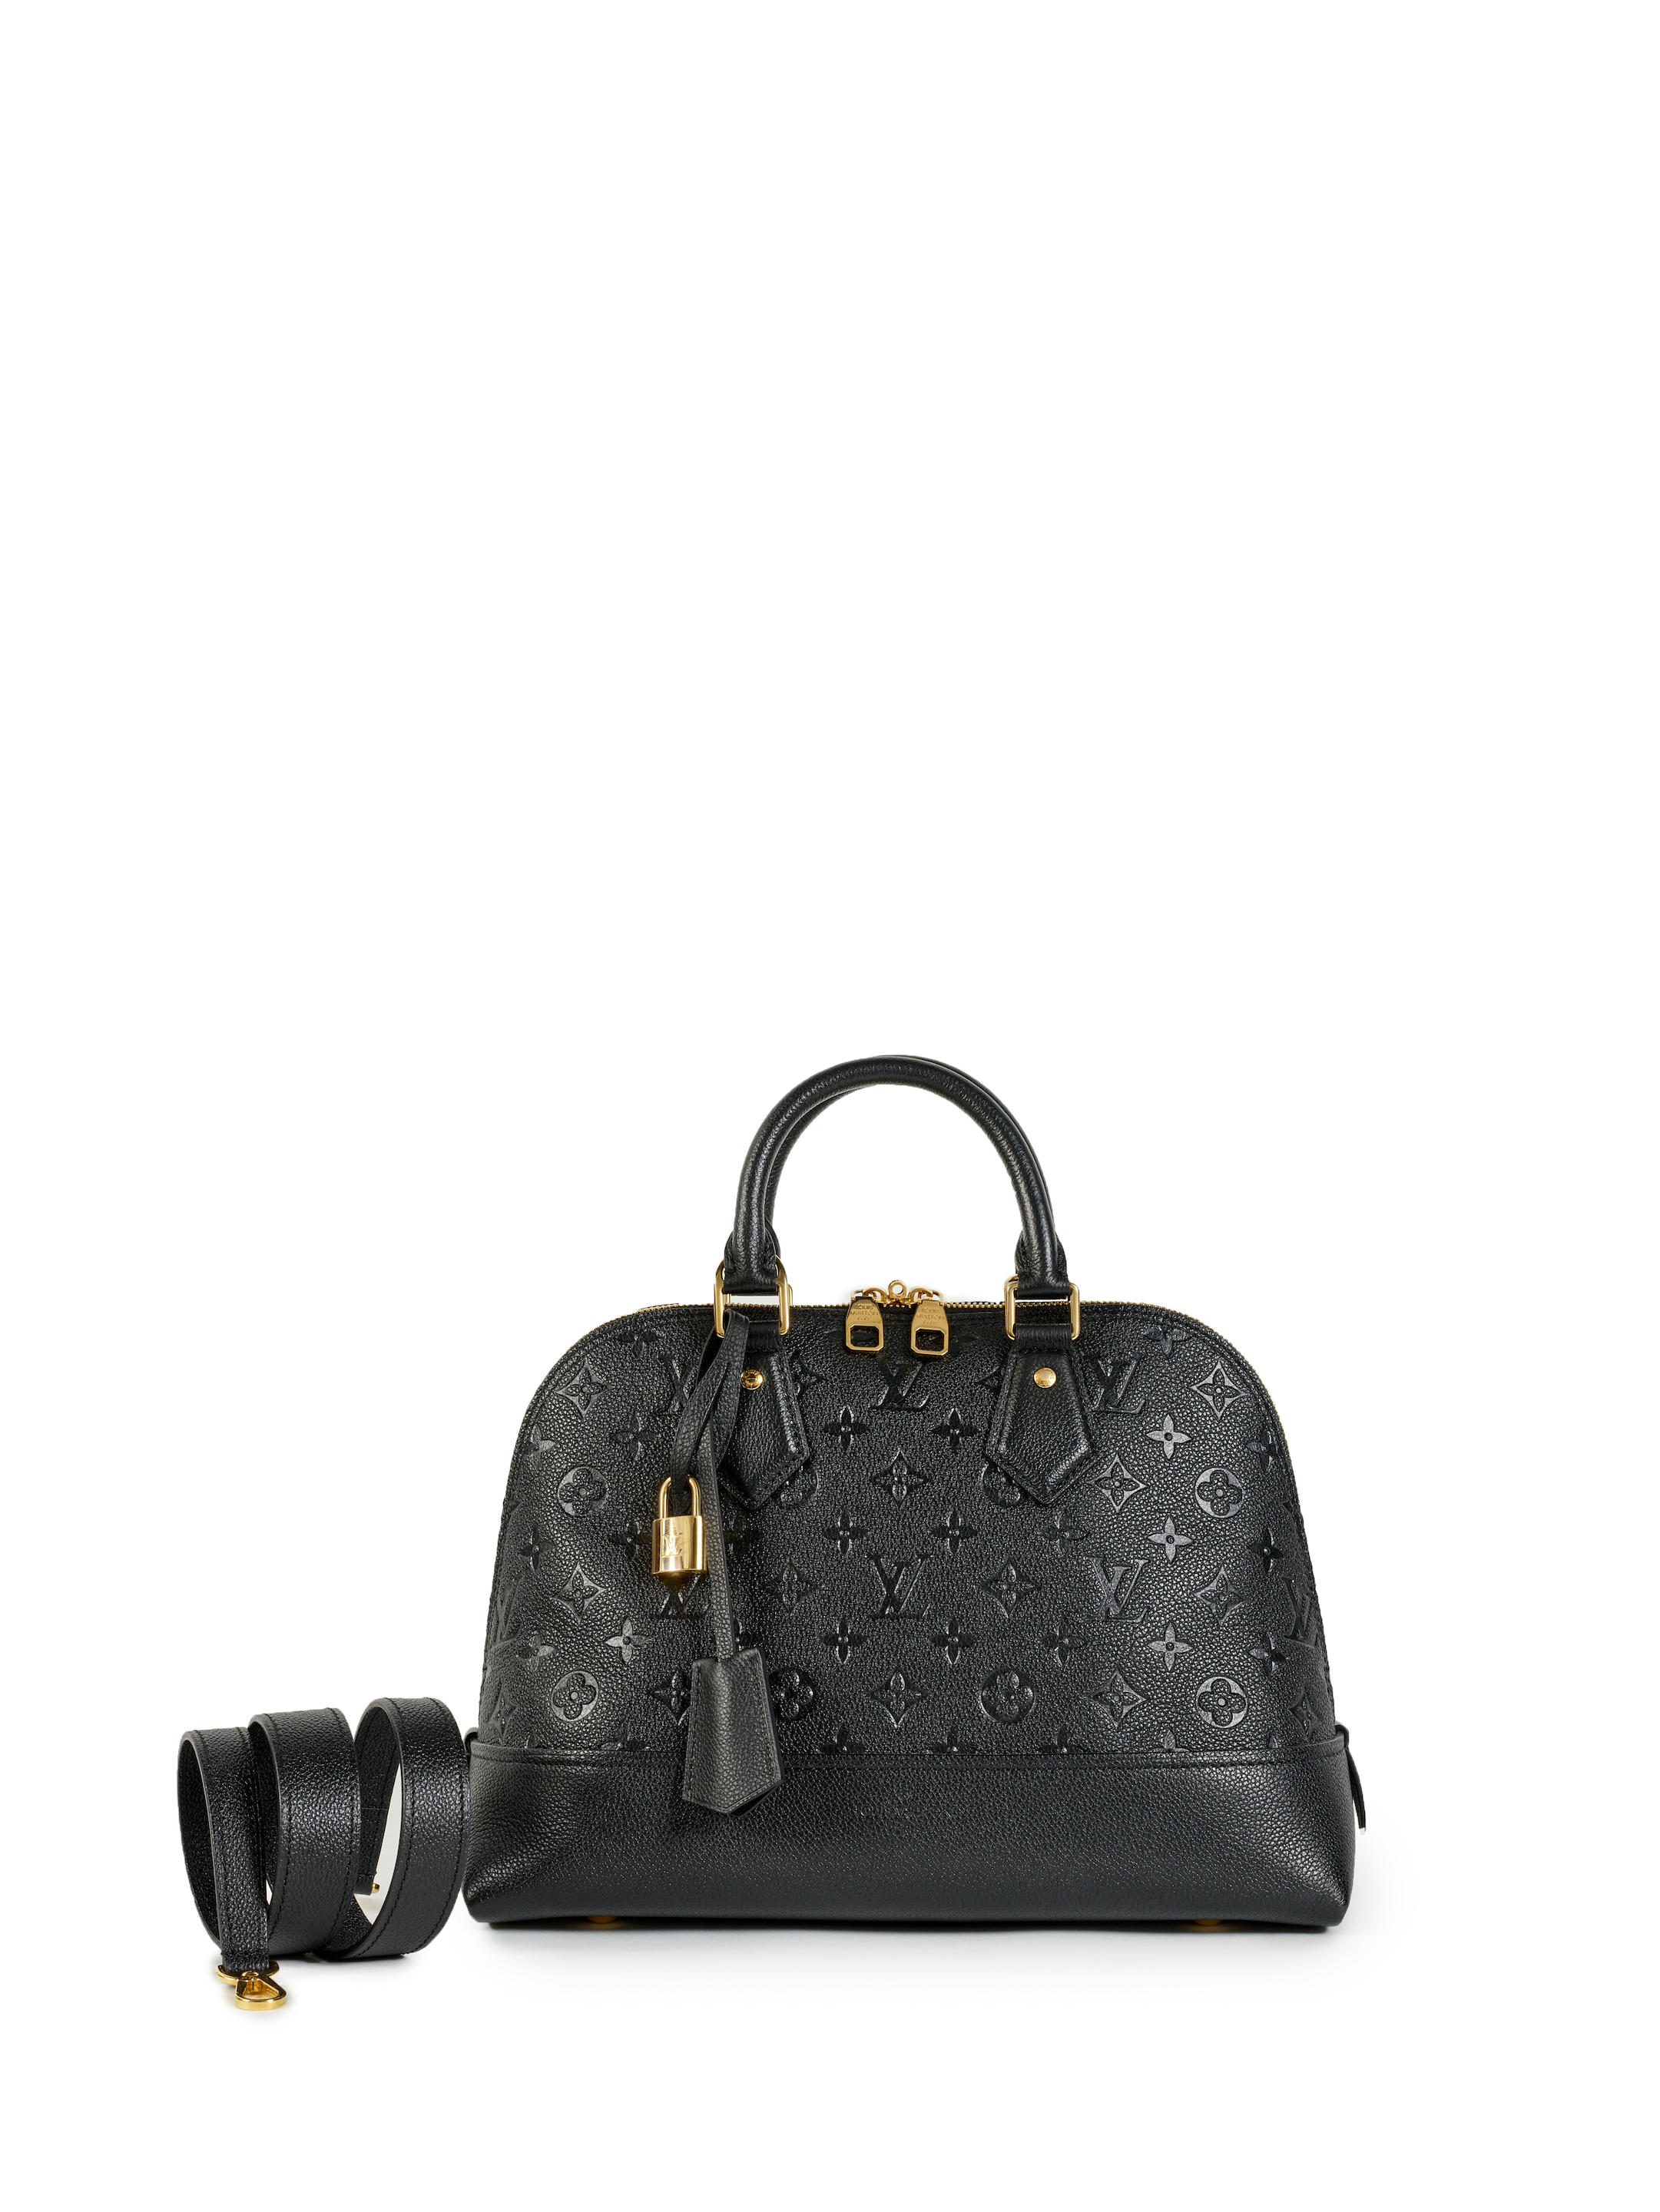 Louis Vuitton Alma Handbag for Sale in Online Auctions